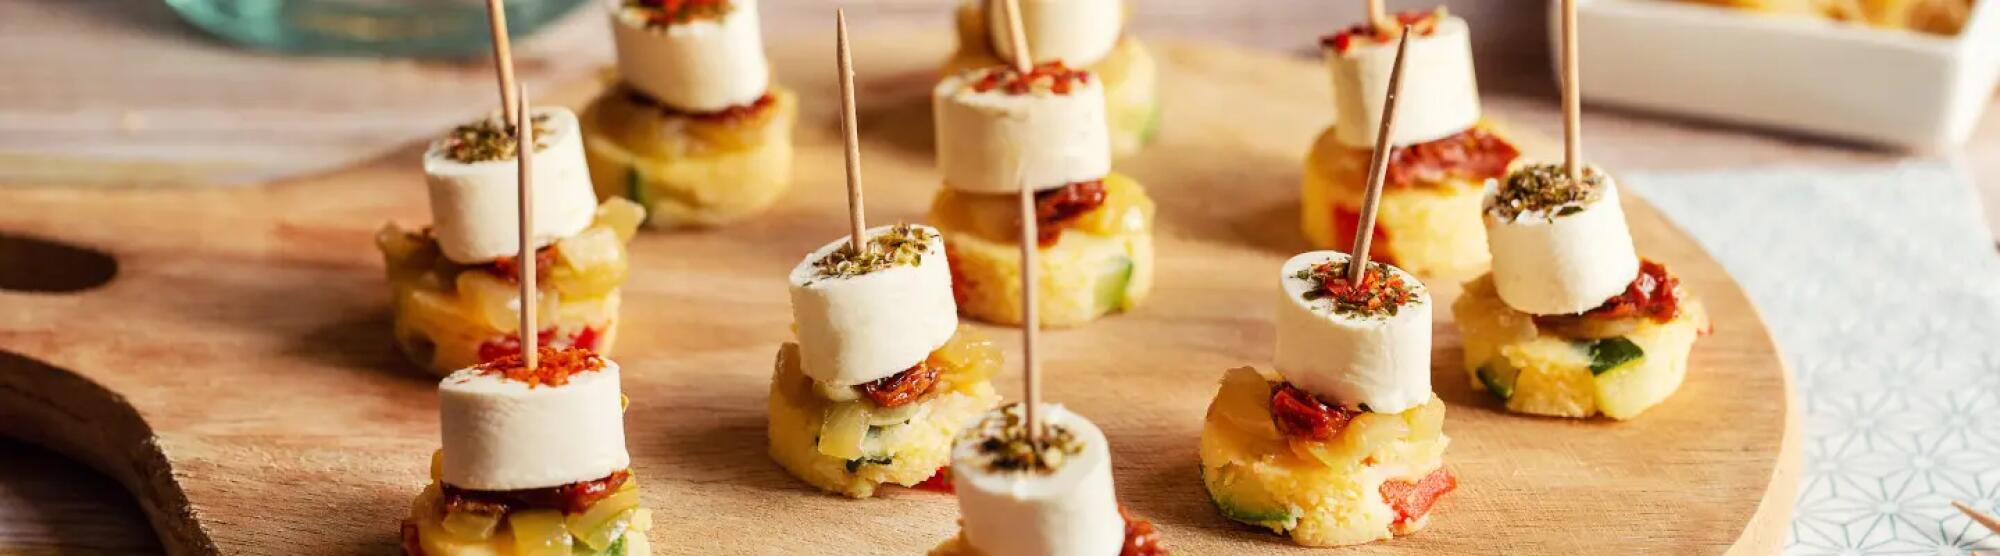 Recette : Bouchées de polenta et fromages apéritifs aux saveurs italiennes